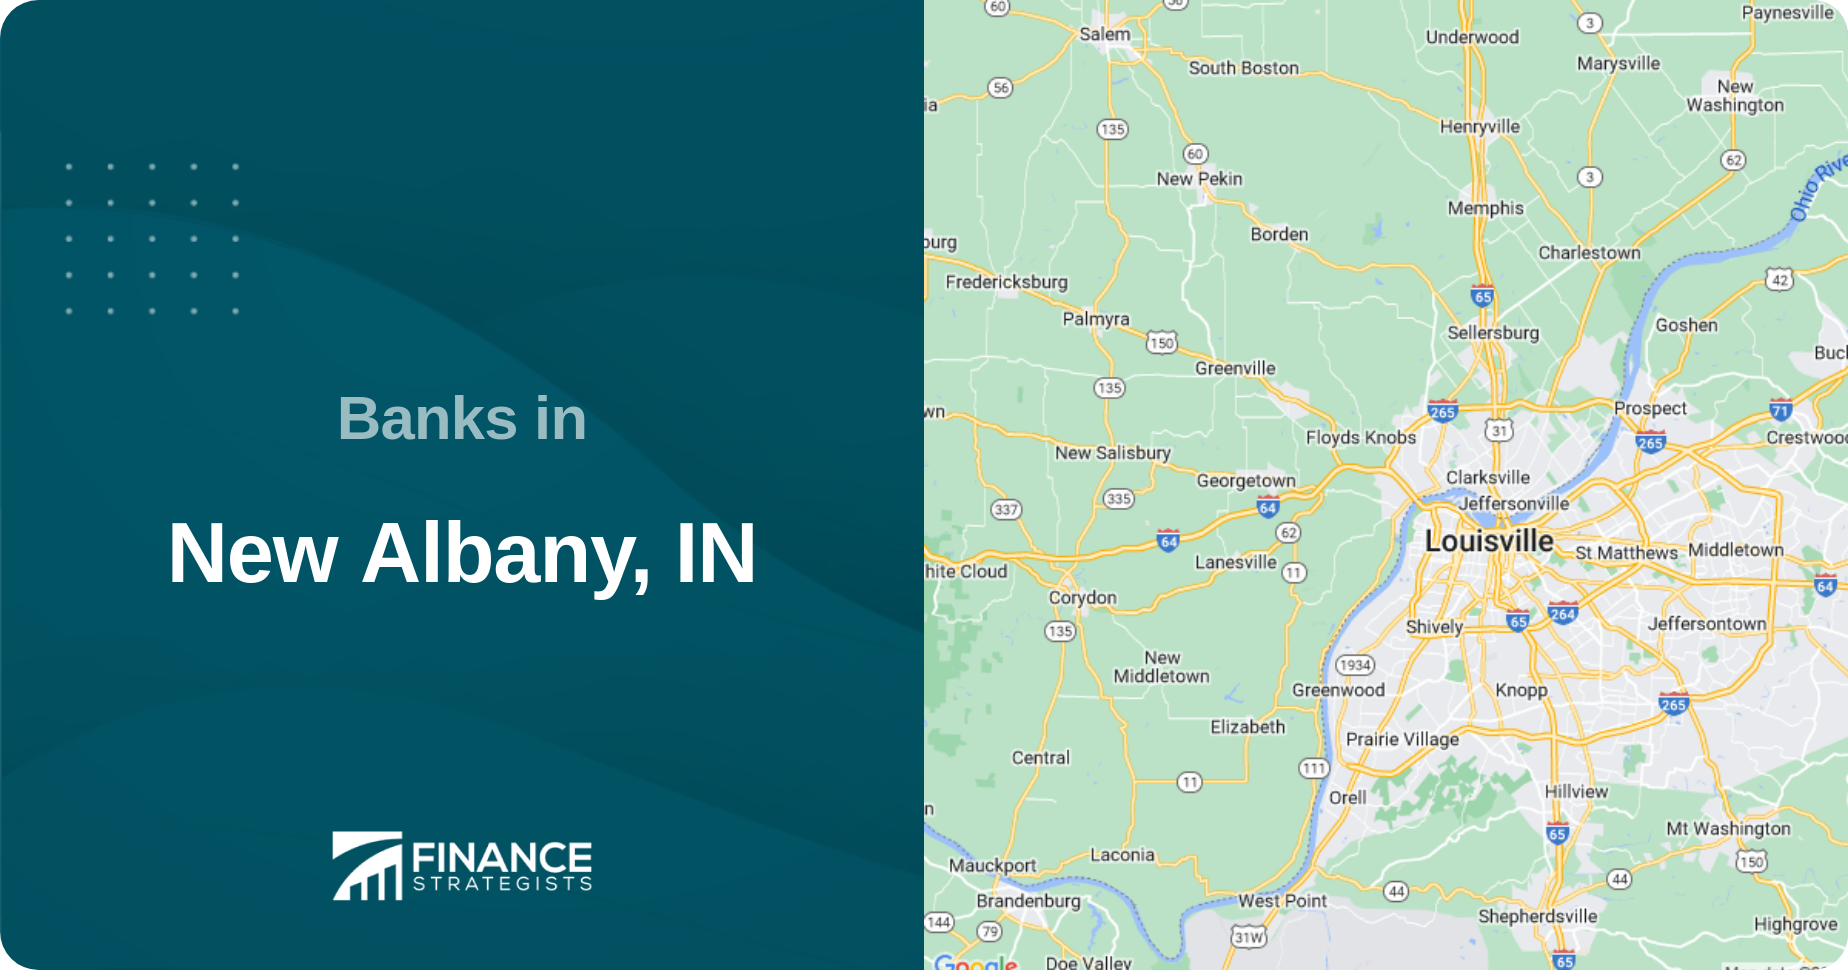 Banks in New Albany, IN